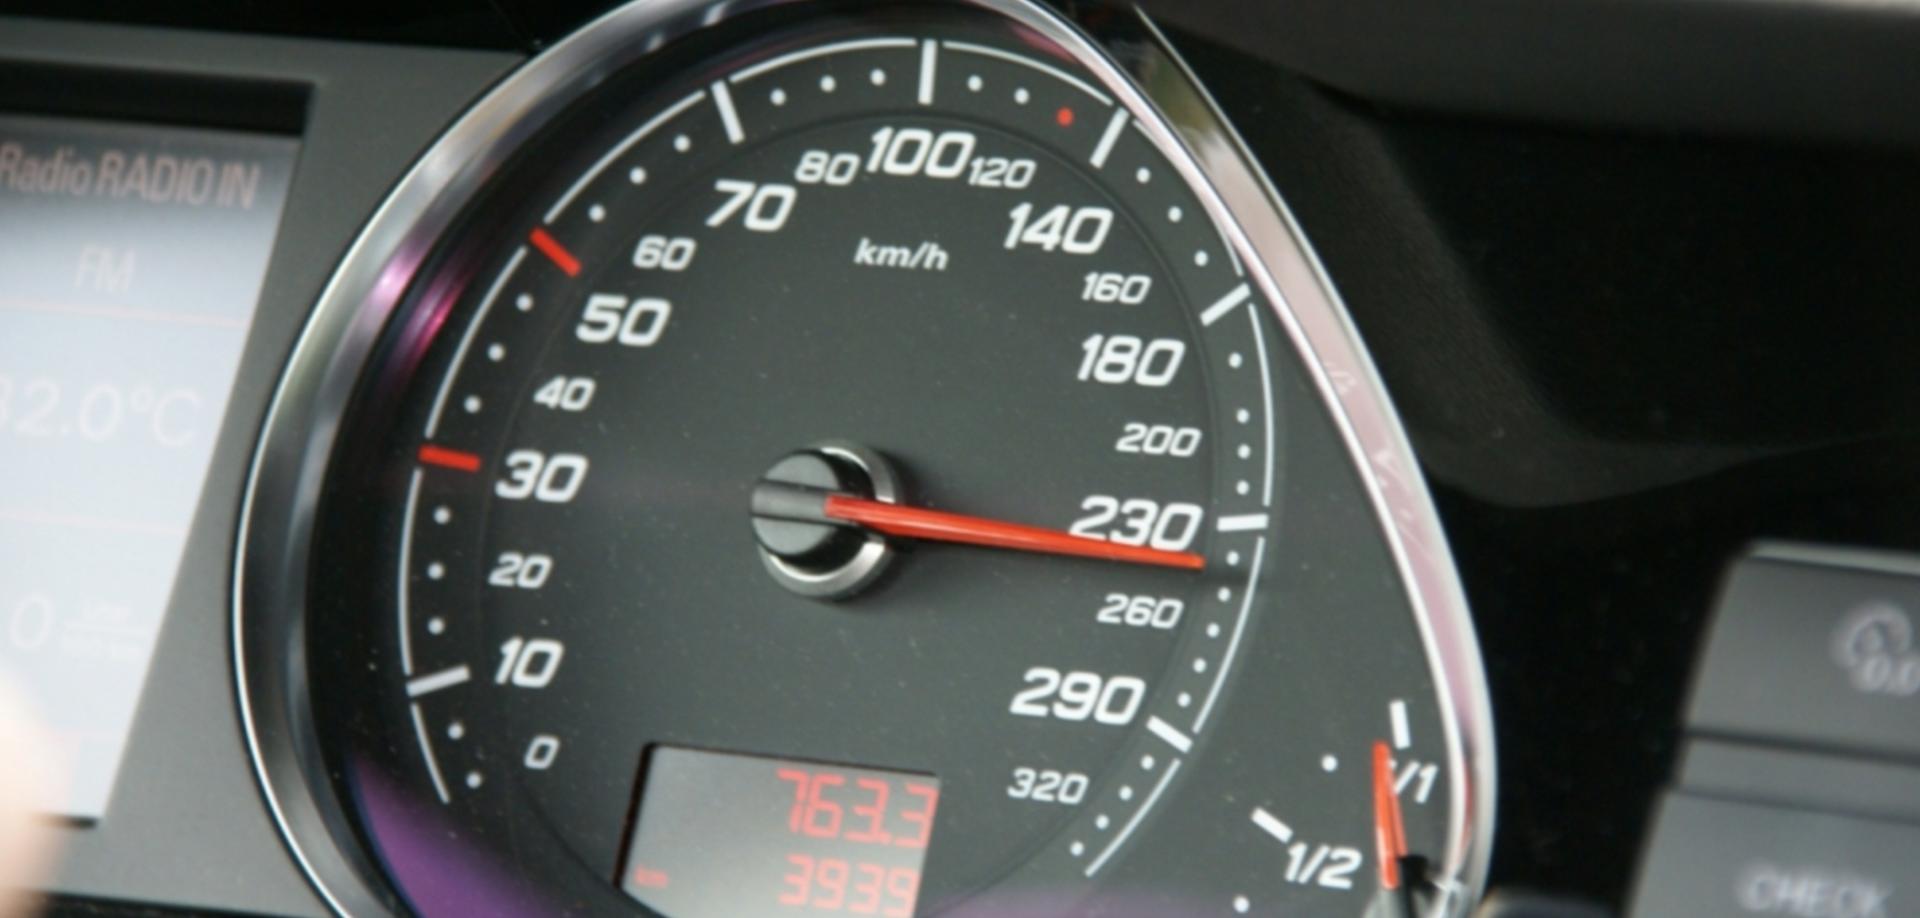 Дали километражата на вашиот половен автомобил одговара на реалниот број на поминати километри?